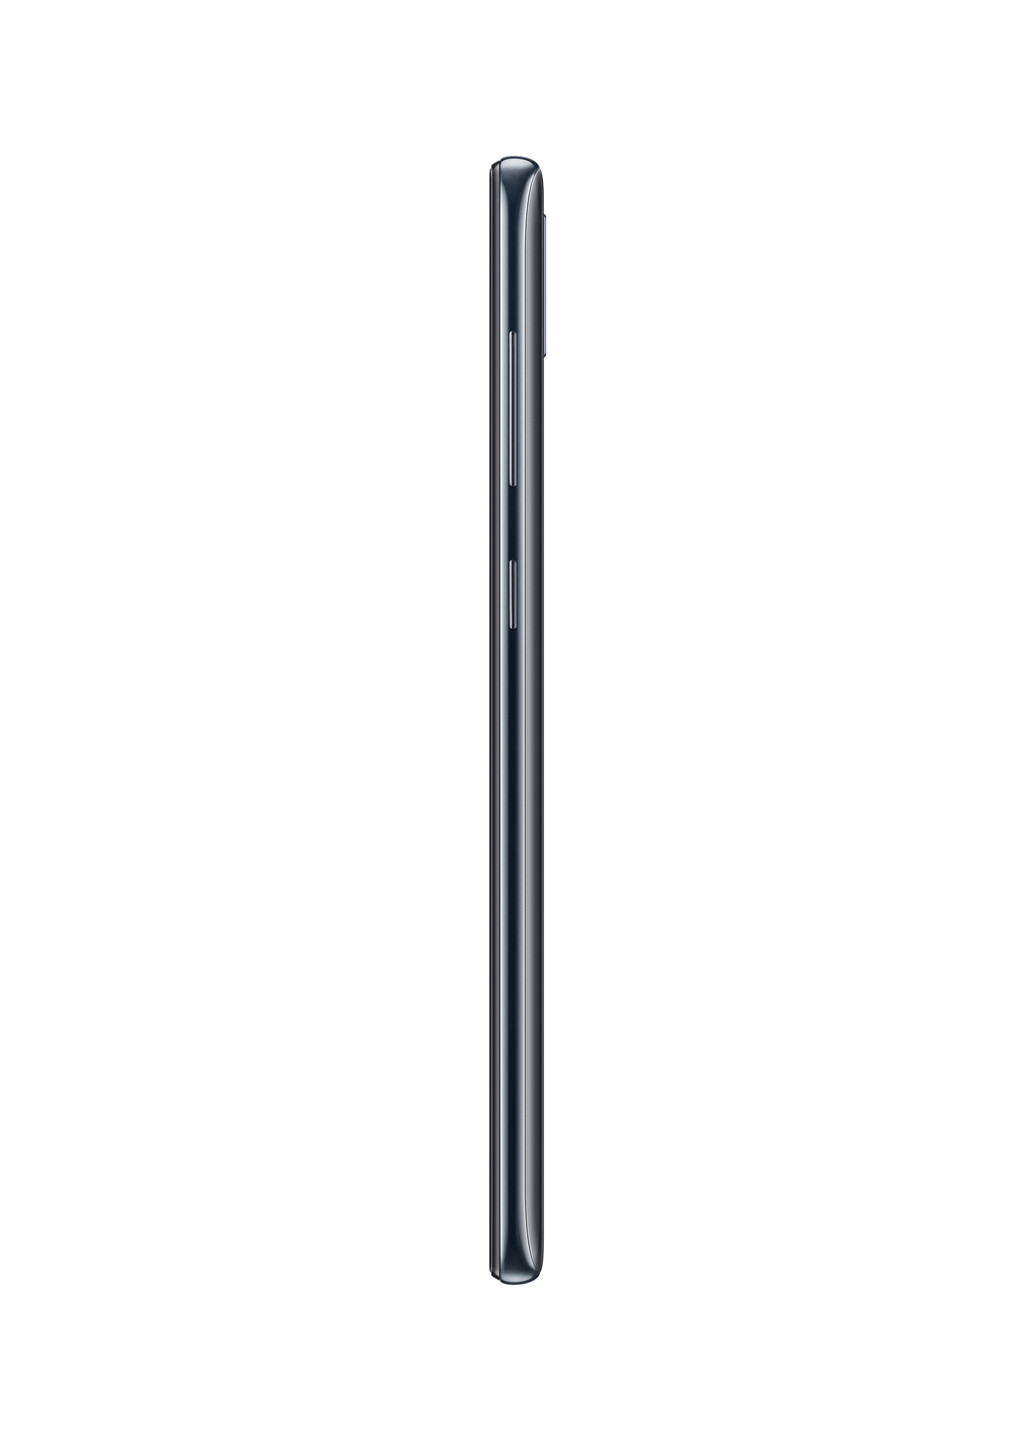 Смартфон Samsung galaxy a30 3/32gb black (sm-a305fzkusek) (131063863)